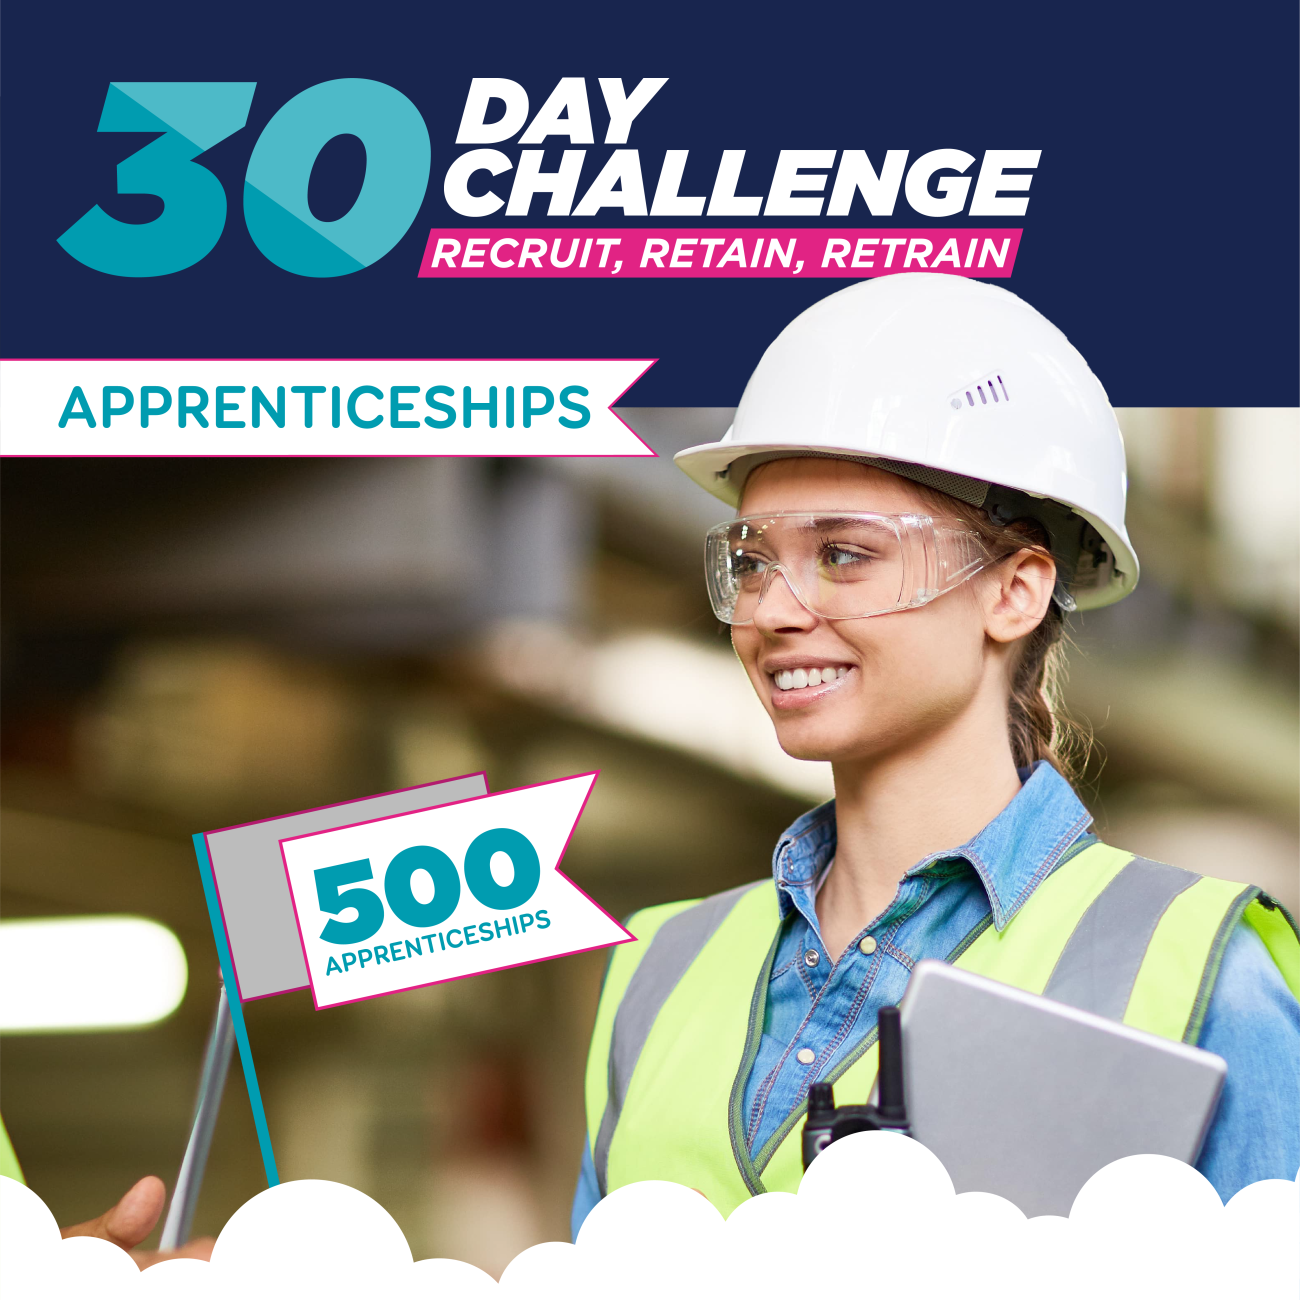 apprenticeships 30 day challenge 